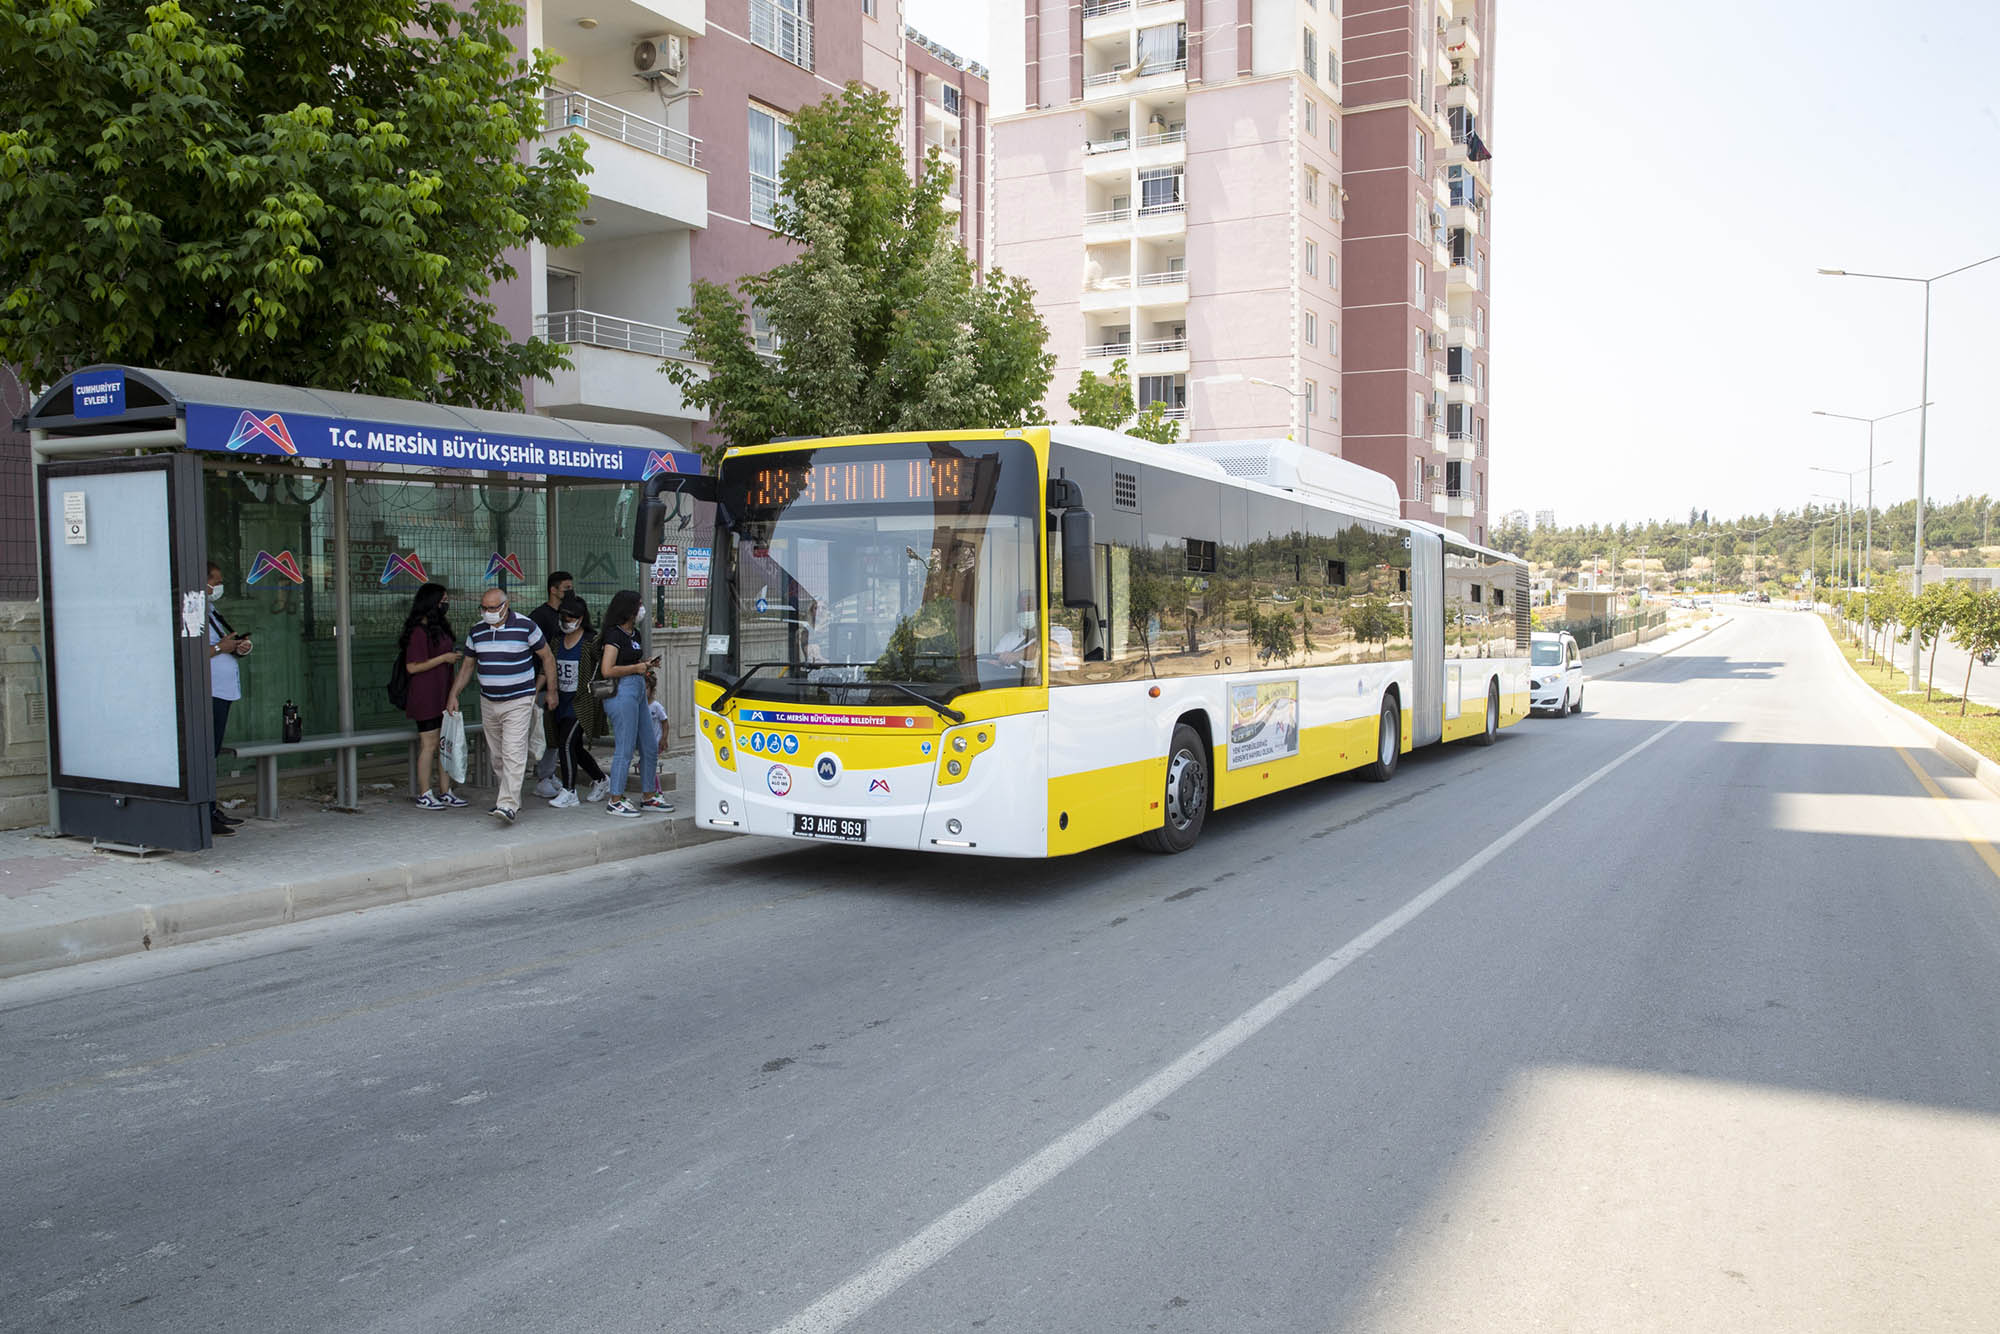  Mersin Büyükşehir’den 65 Yaş Üstü ve 18 Yaş Altına Toplu Taşıma Çağrısı